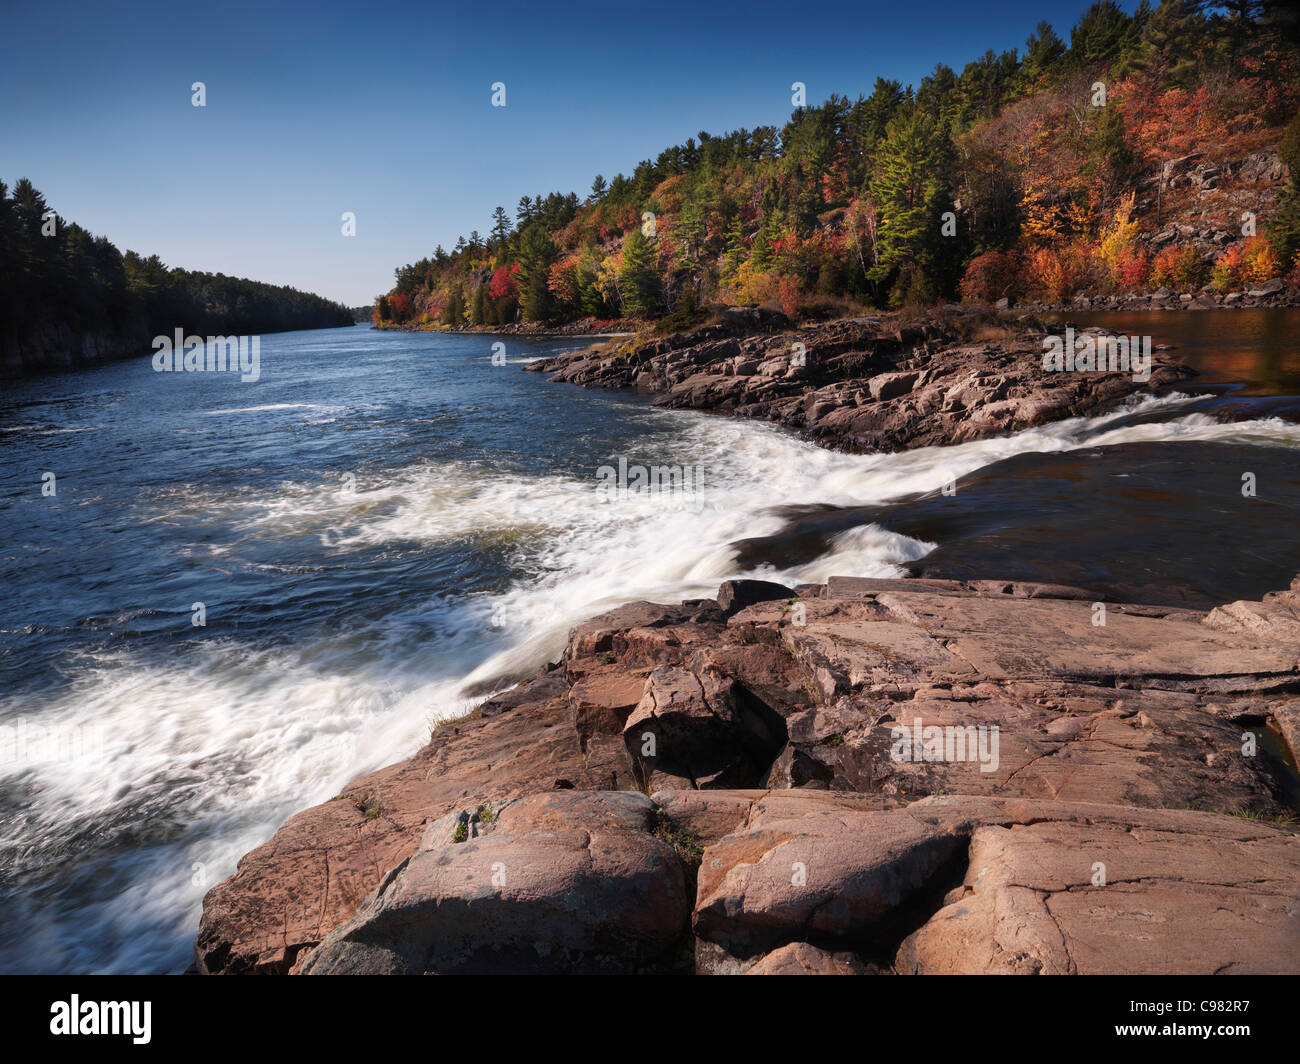 Recollet Wasserfälle des Flusses Französisch. Herbst Natur Landschaft, Ontario, Kanada. Stockfoto